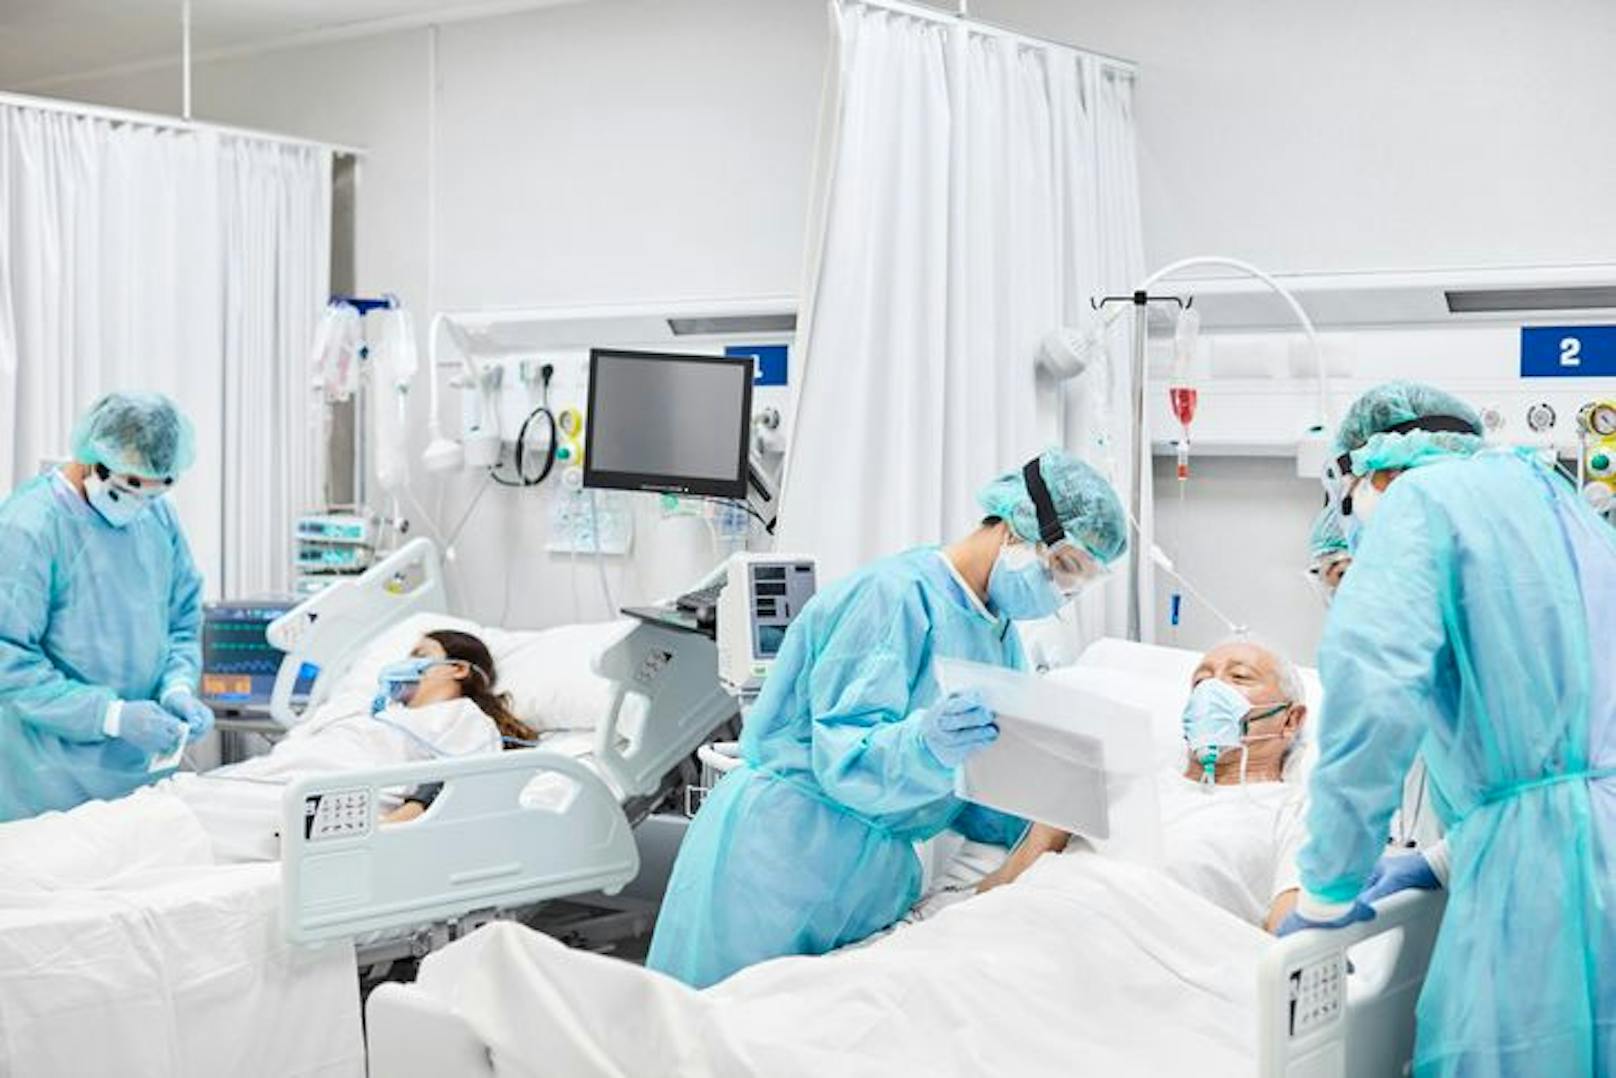 Schon fast 1.000 Menschen müssen covidbedingt österreichweit im Krankenhaus&nbsp; behandelt werden. Symbolbild.&nbsp;